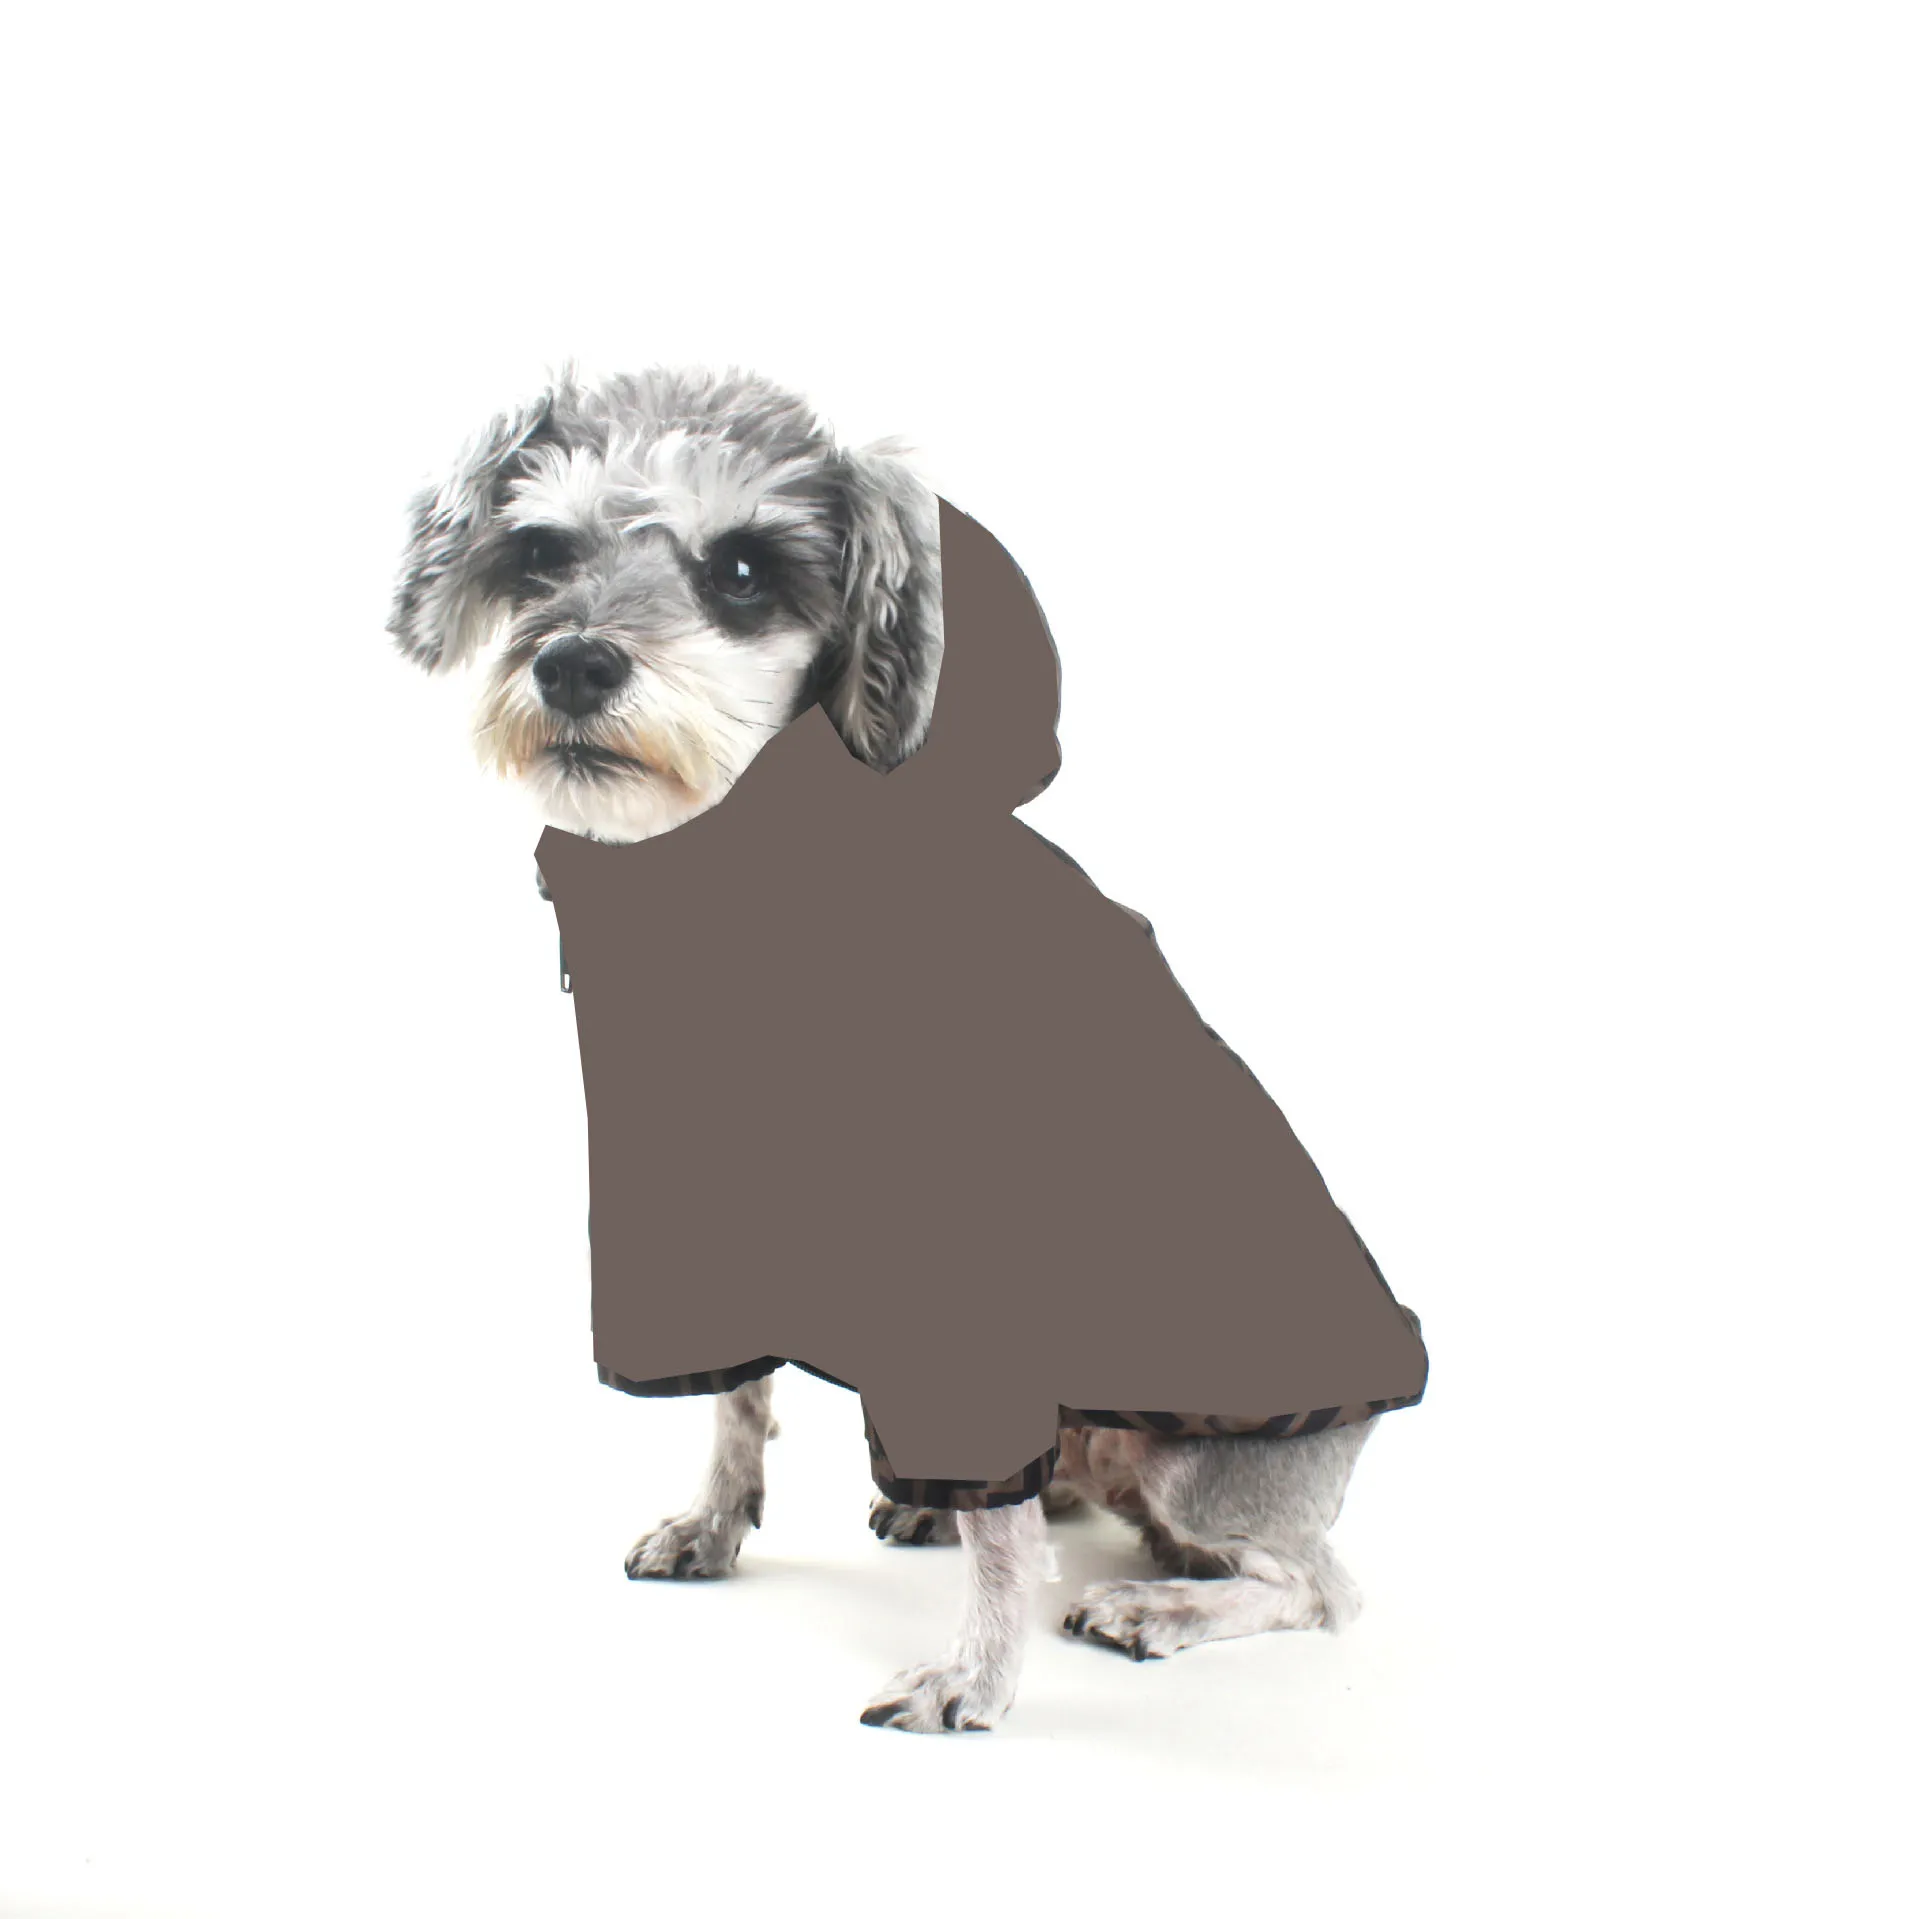 ビンテージペットコートジャケット洋服の手紙プリントスウェット犬アパレルシナウザーブルドッグプードル子犬服衣装